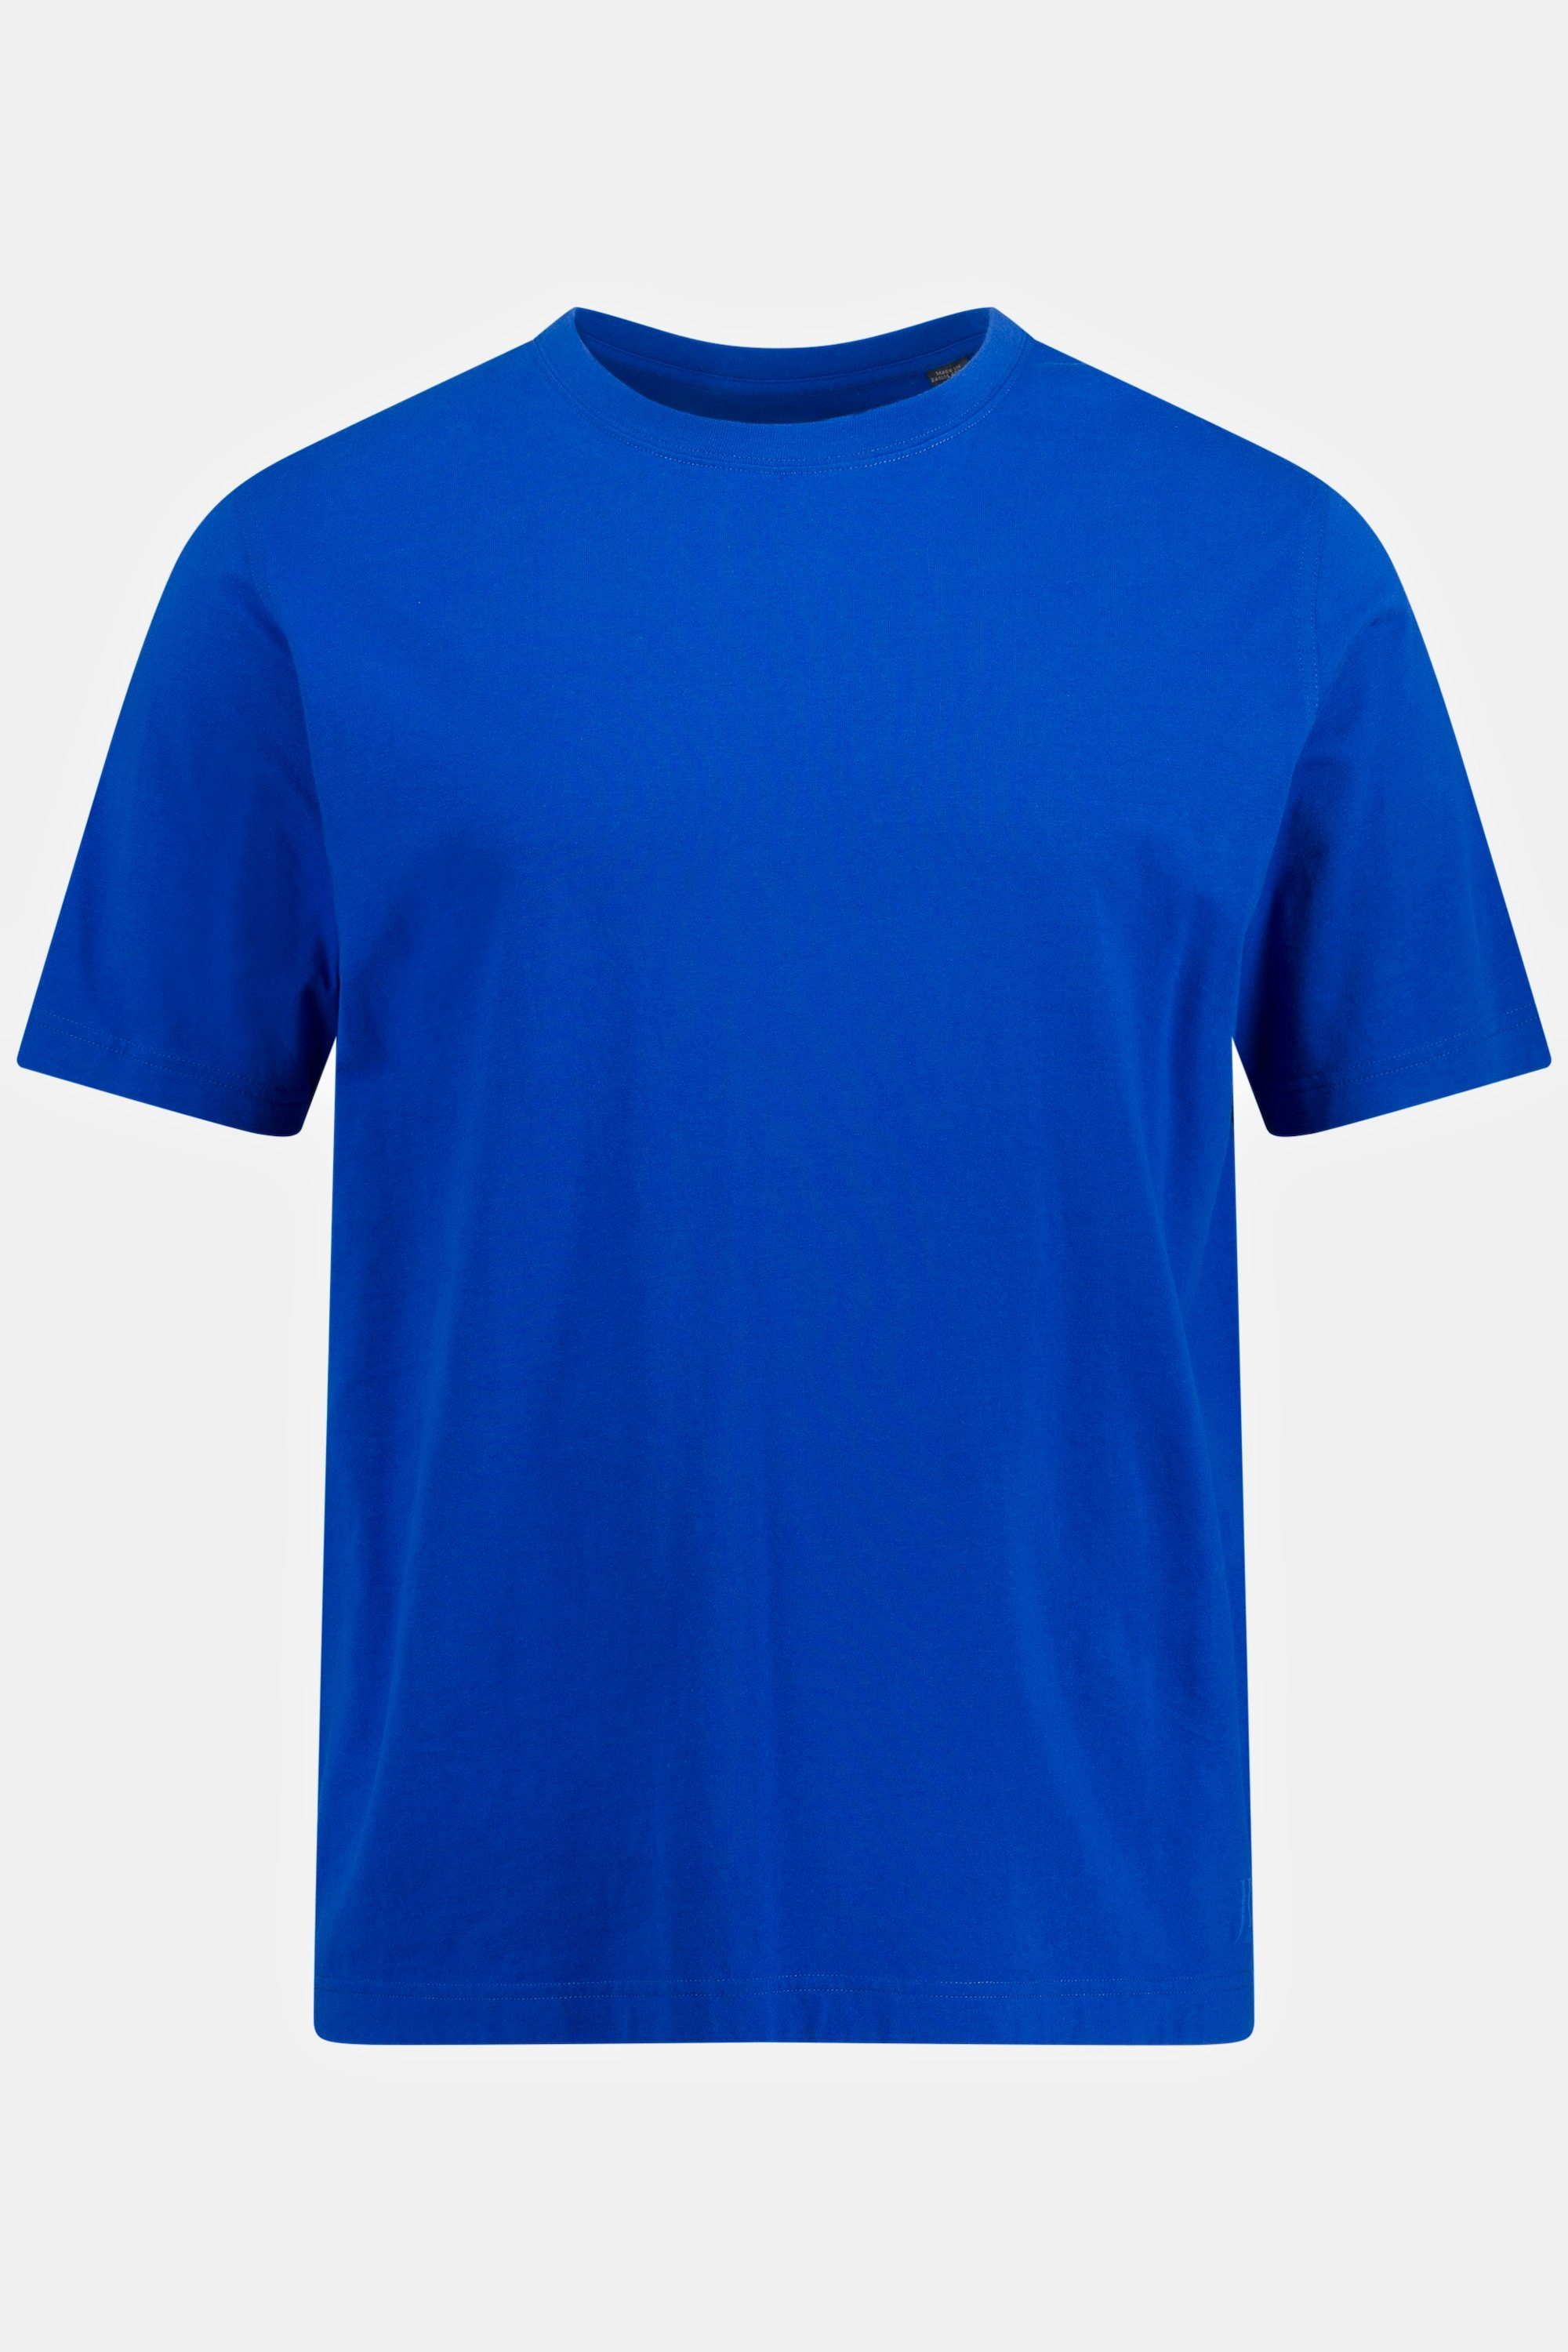 kobaltblau gekämmte bis Baumwolle Rundhals 8XL T-Shirt JP1880 T-Shirt Basic